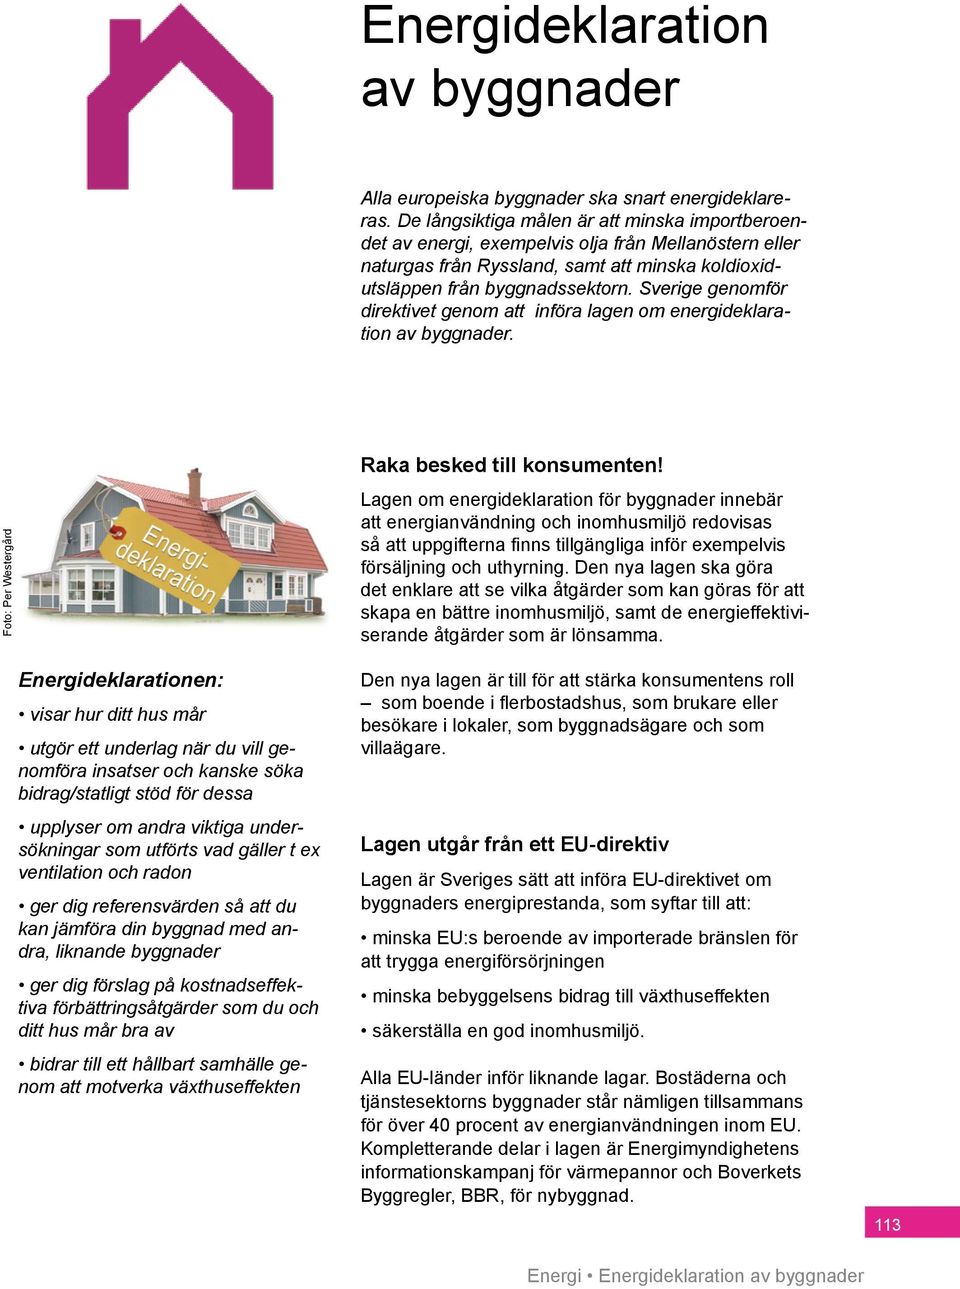 Sverige genomför direktivet genom att införa lagen om energideklaration av byggnader.